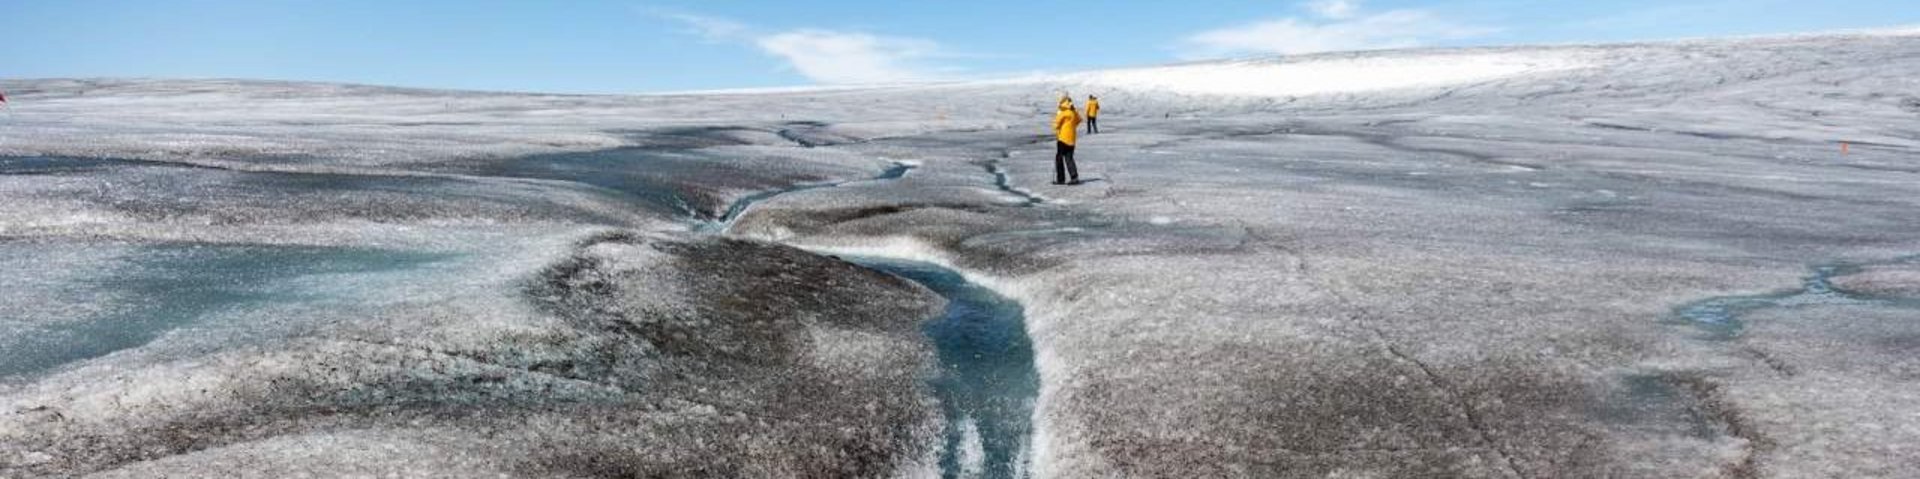 Schmelzwasserfall in Grönland